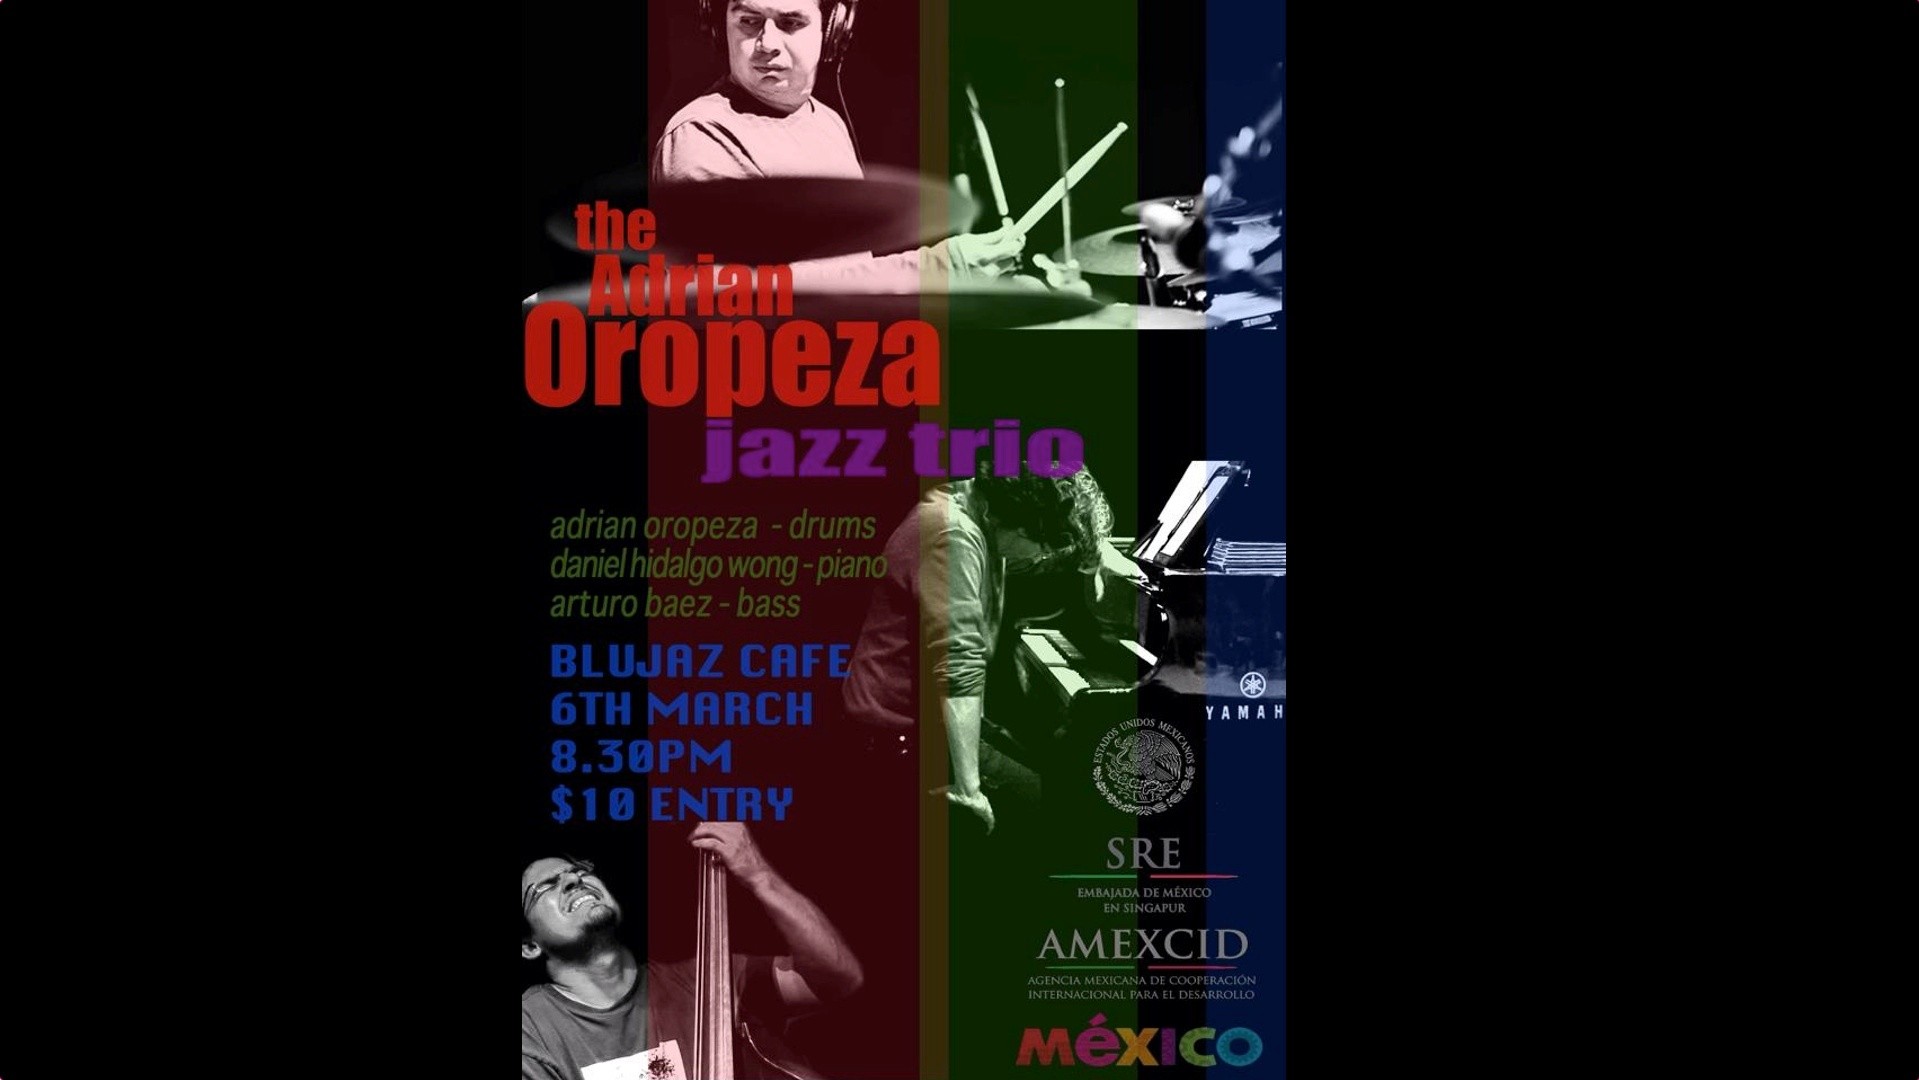 Adrian Oropeza Jazz Trio